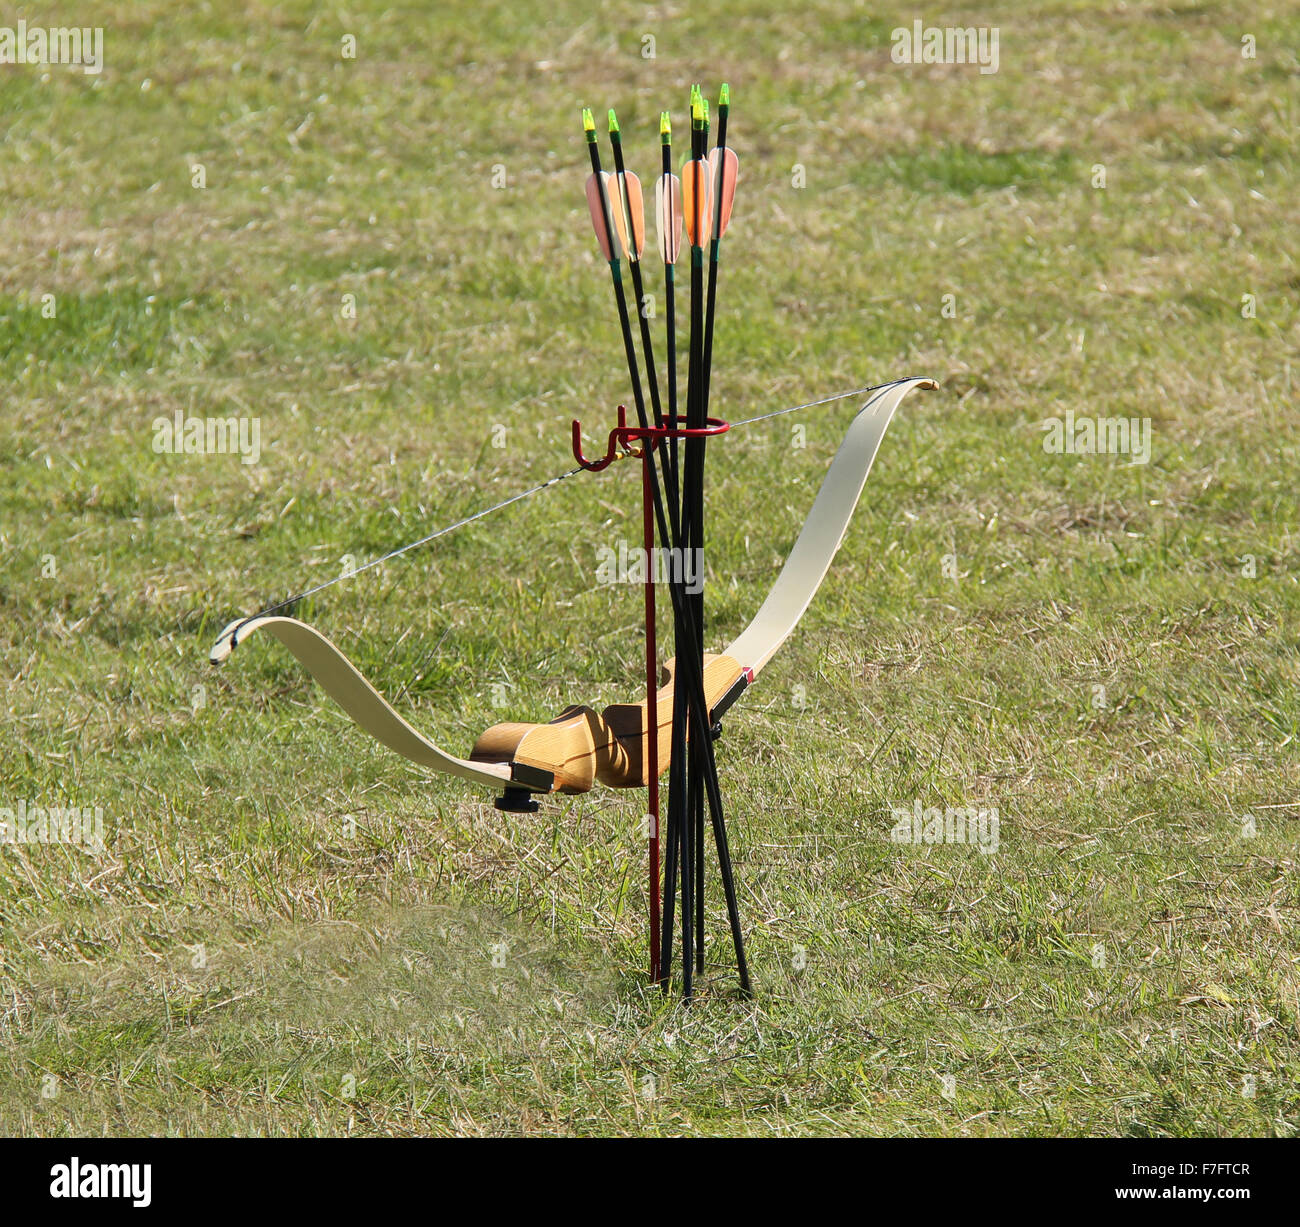 Un arco y flechas para el moderno deporte de tiro con arco